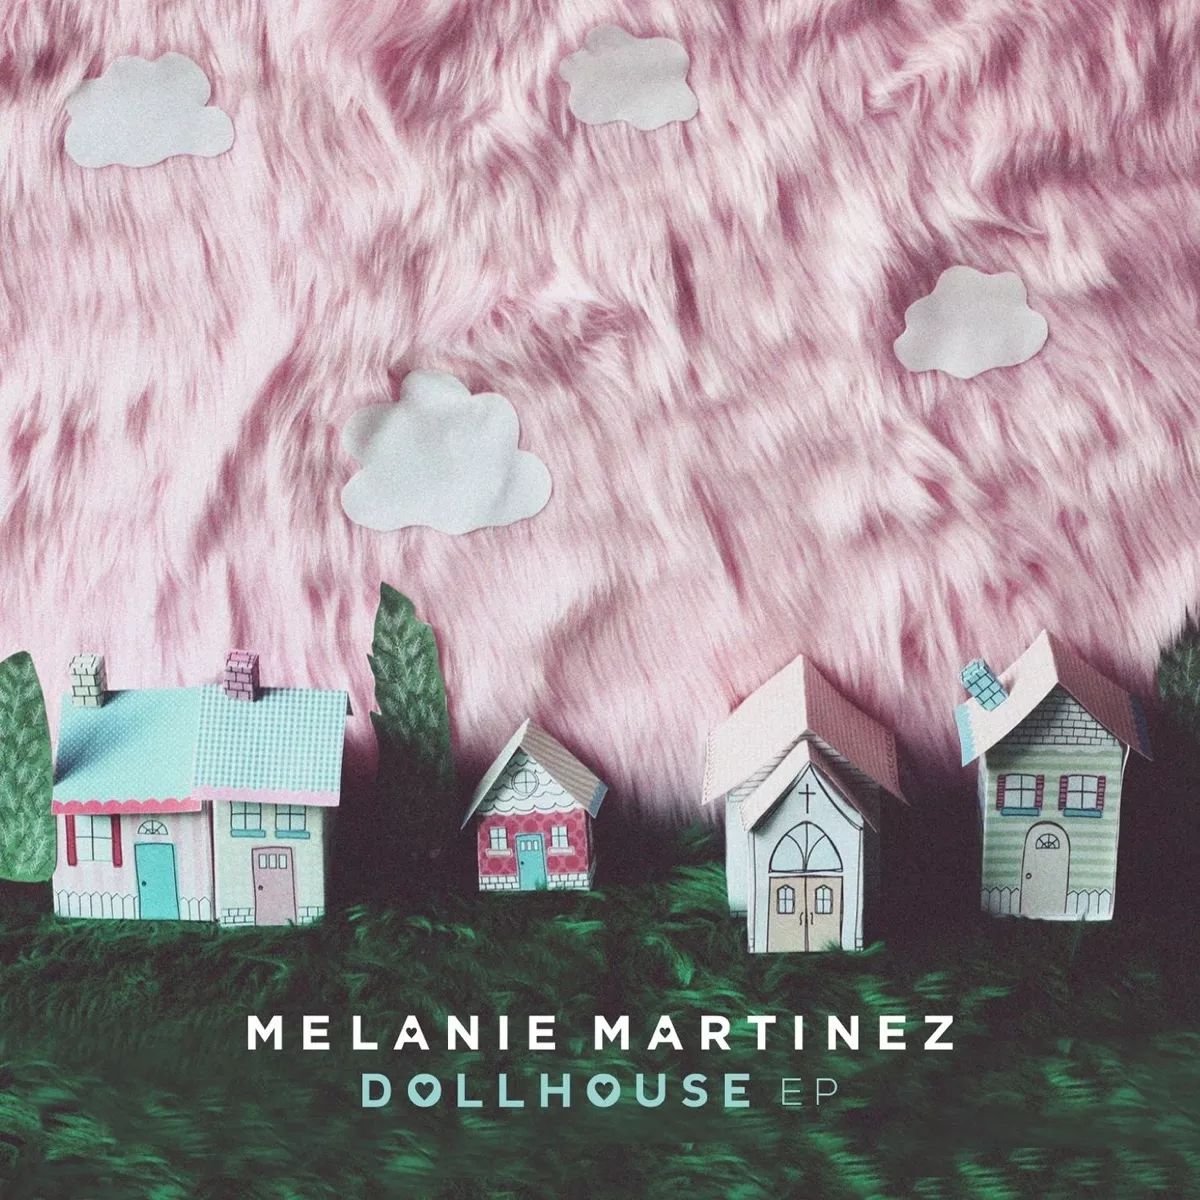 DOLLHOUSE (TRADUÇÃO) - Melanie Martinez 